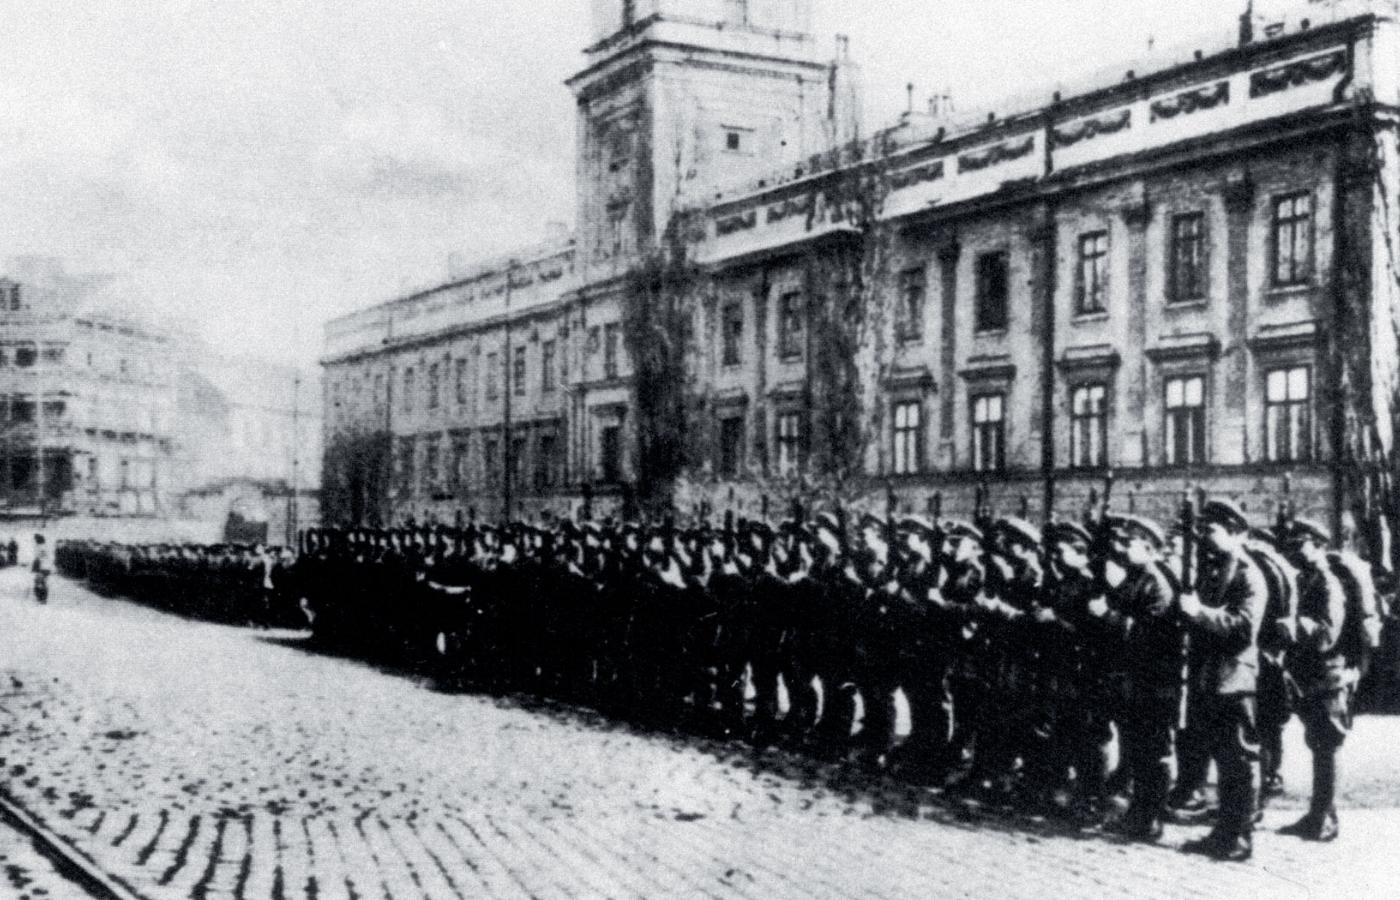 Przegląd jednego z pierwszych oddziałów polskiej piechoty po wypędzeniu zaborców, Warszawa, przed Zamkiem Królewskim, jesień 1918 r.